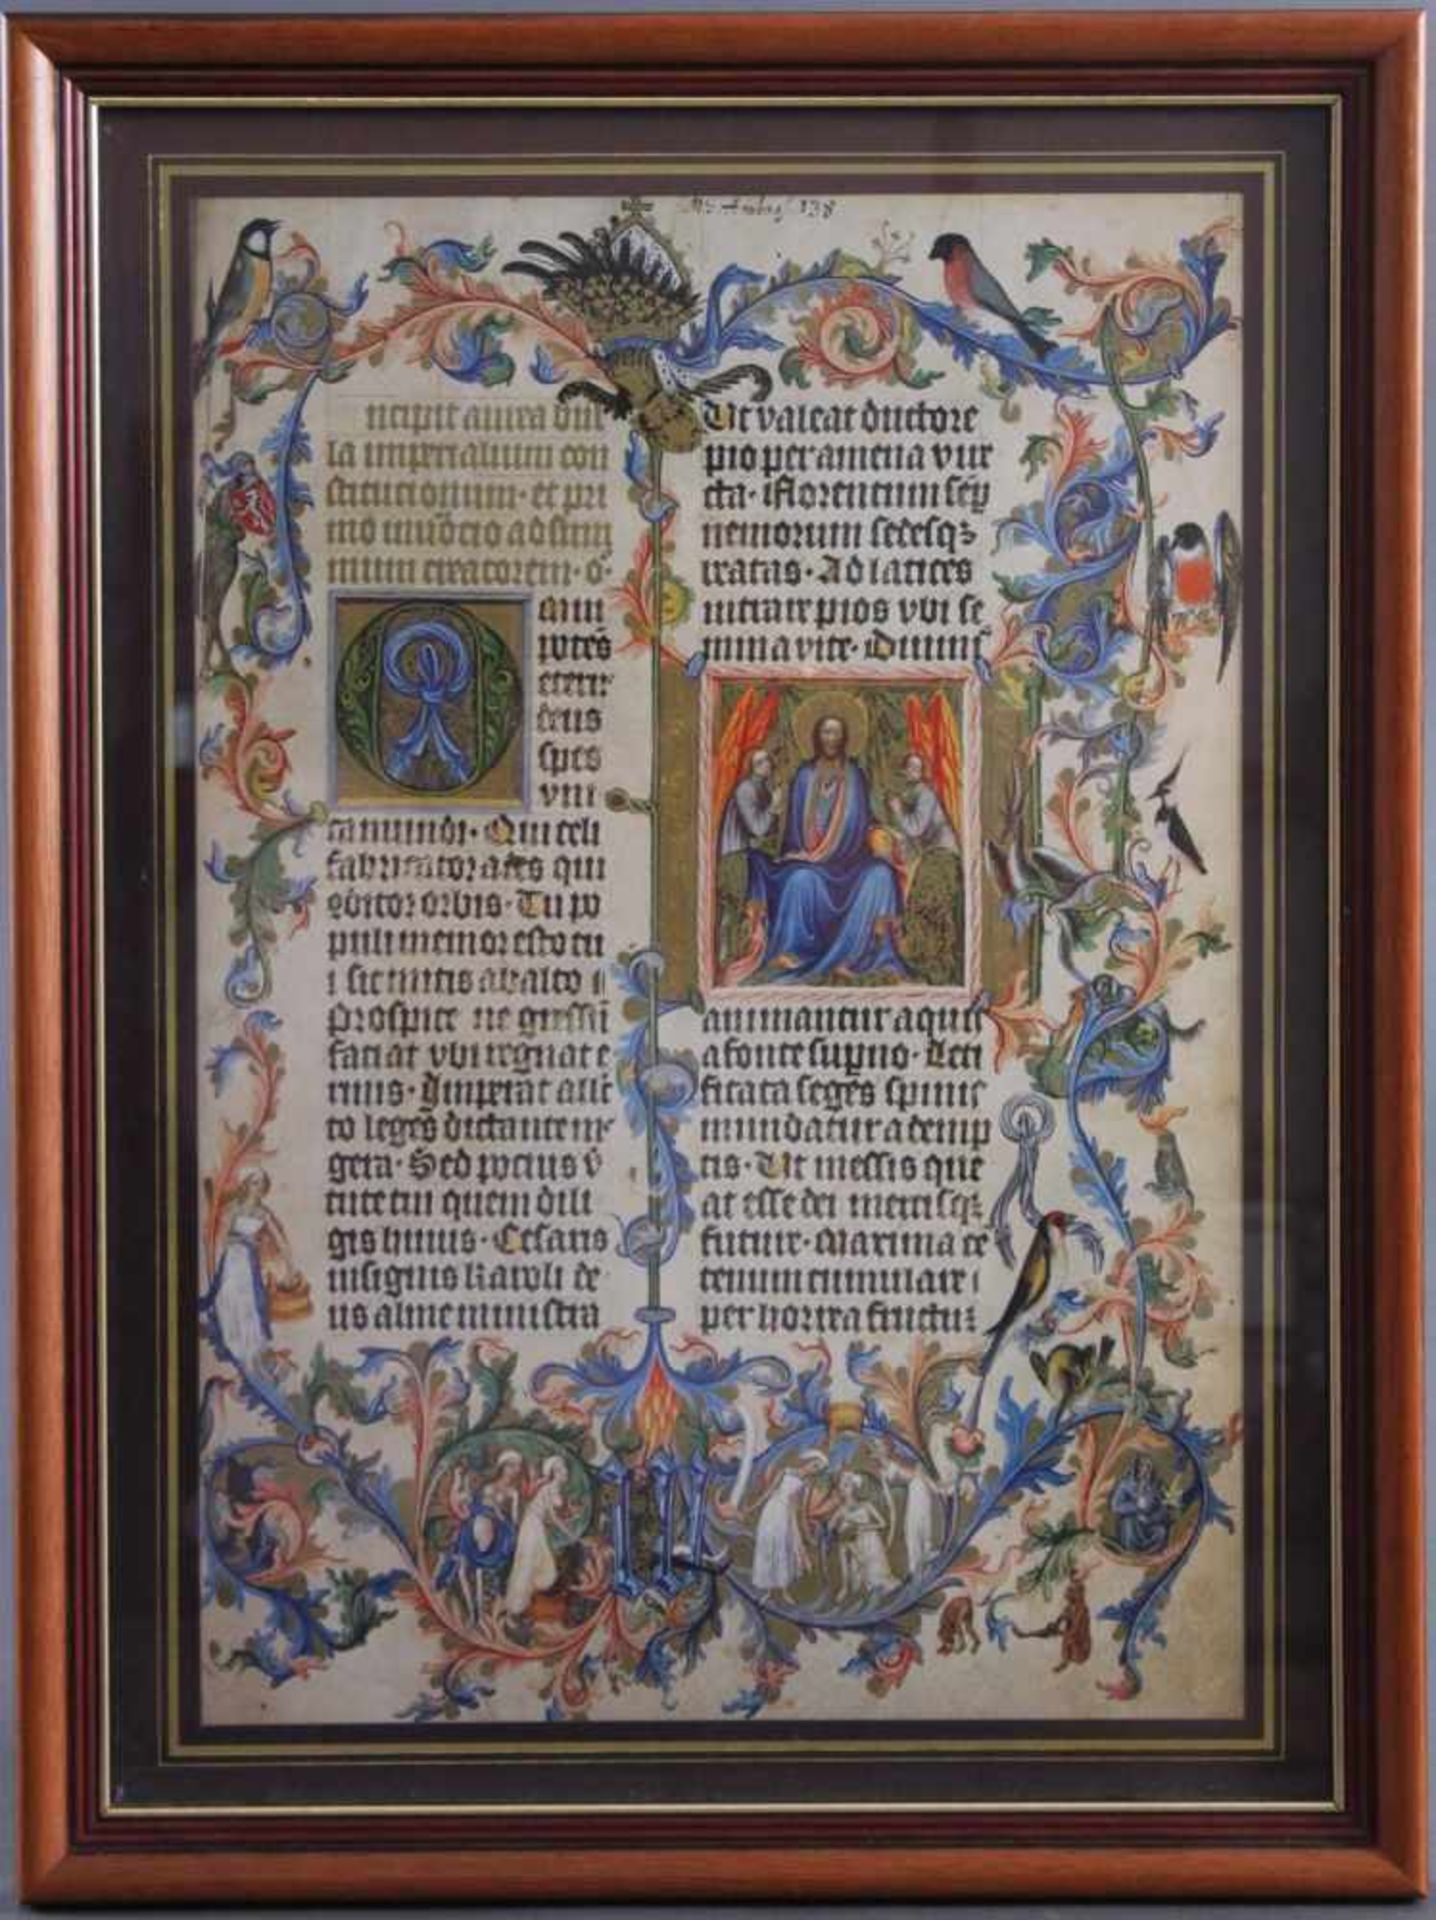 Faksimile-Titelblatt der Goldenen Bulle anno 1356Übersetzung aus der mittelalterlichen